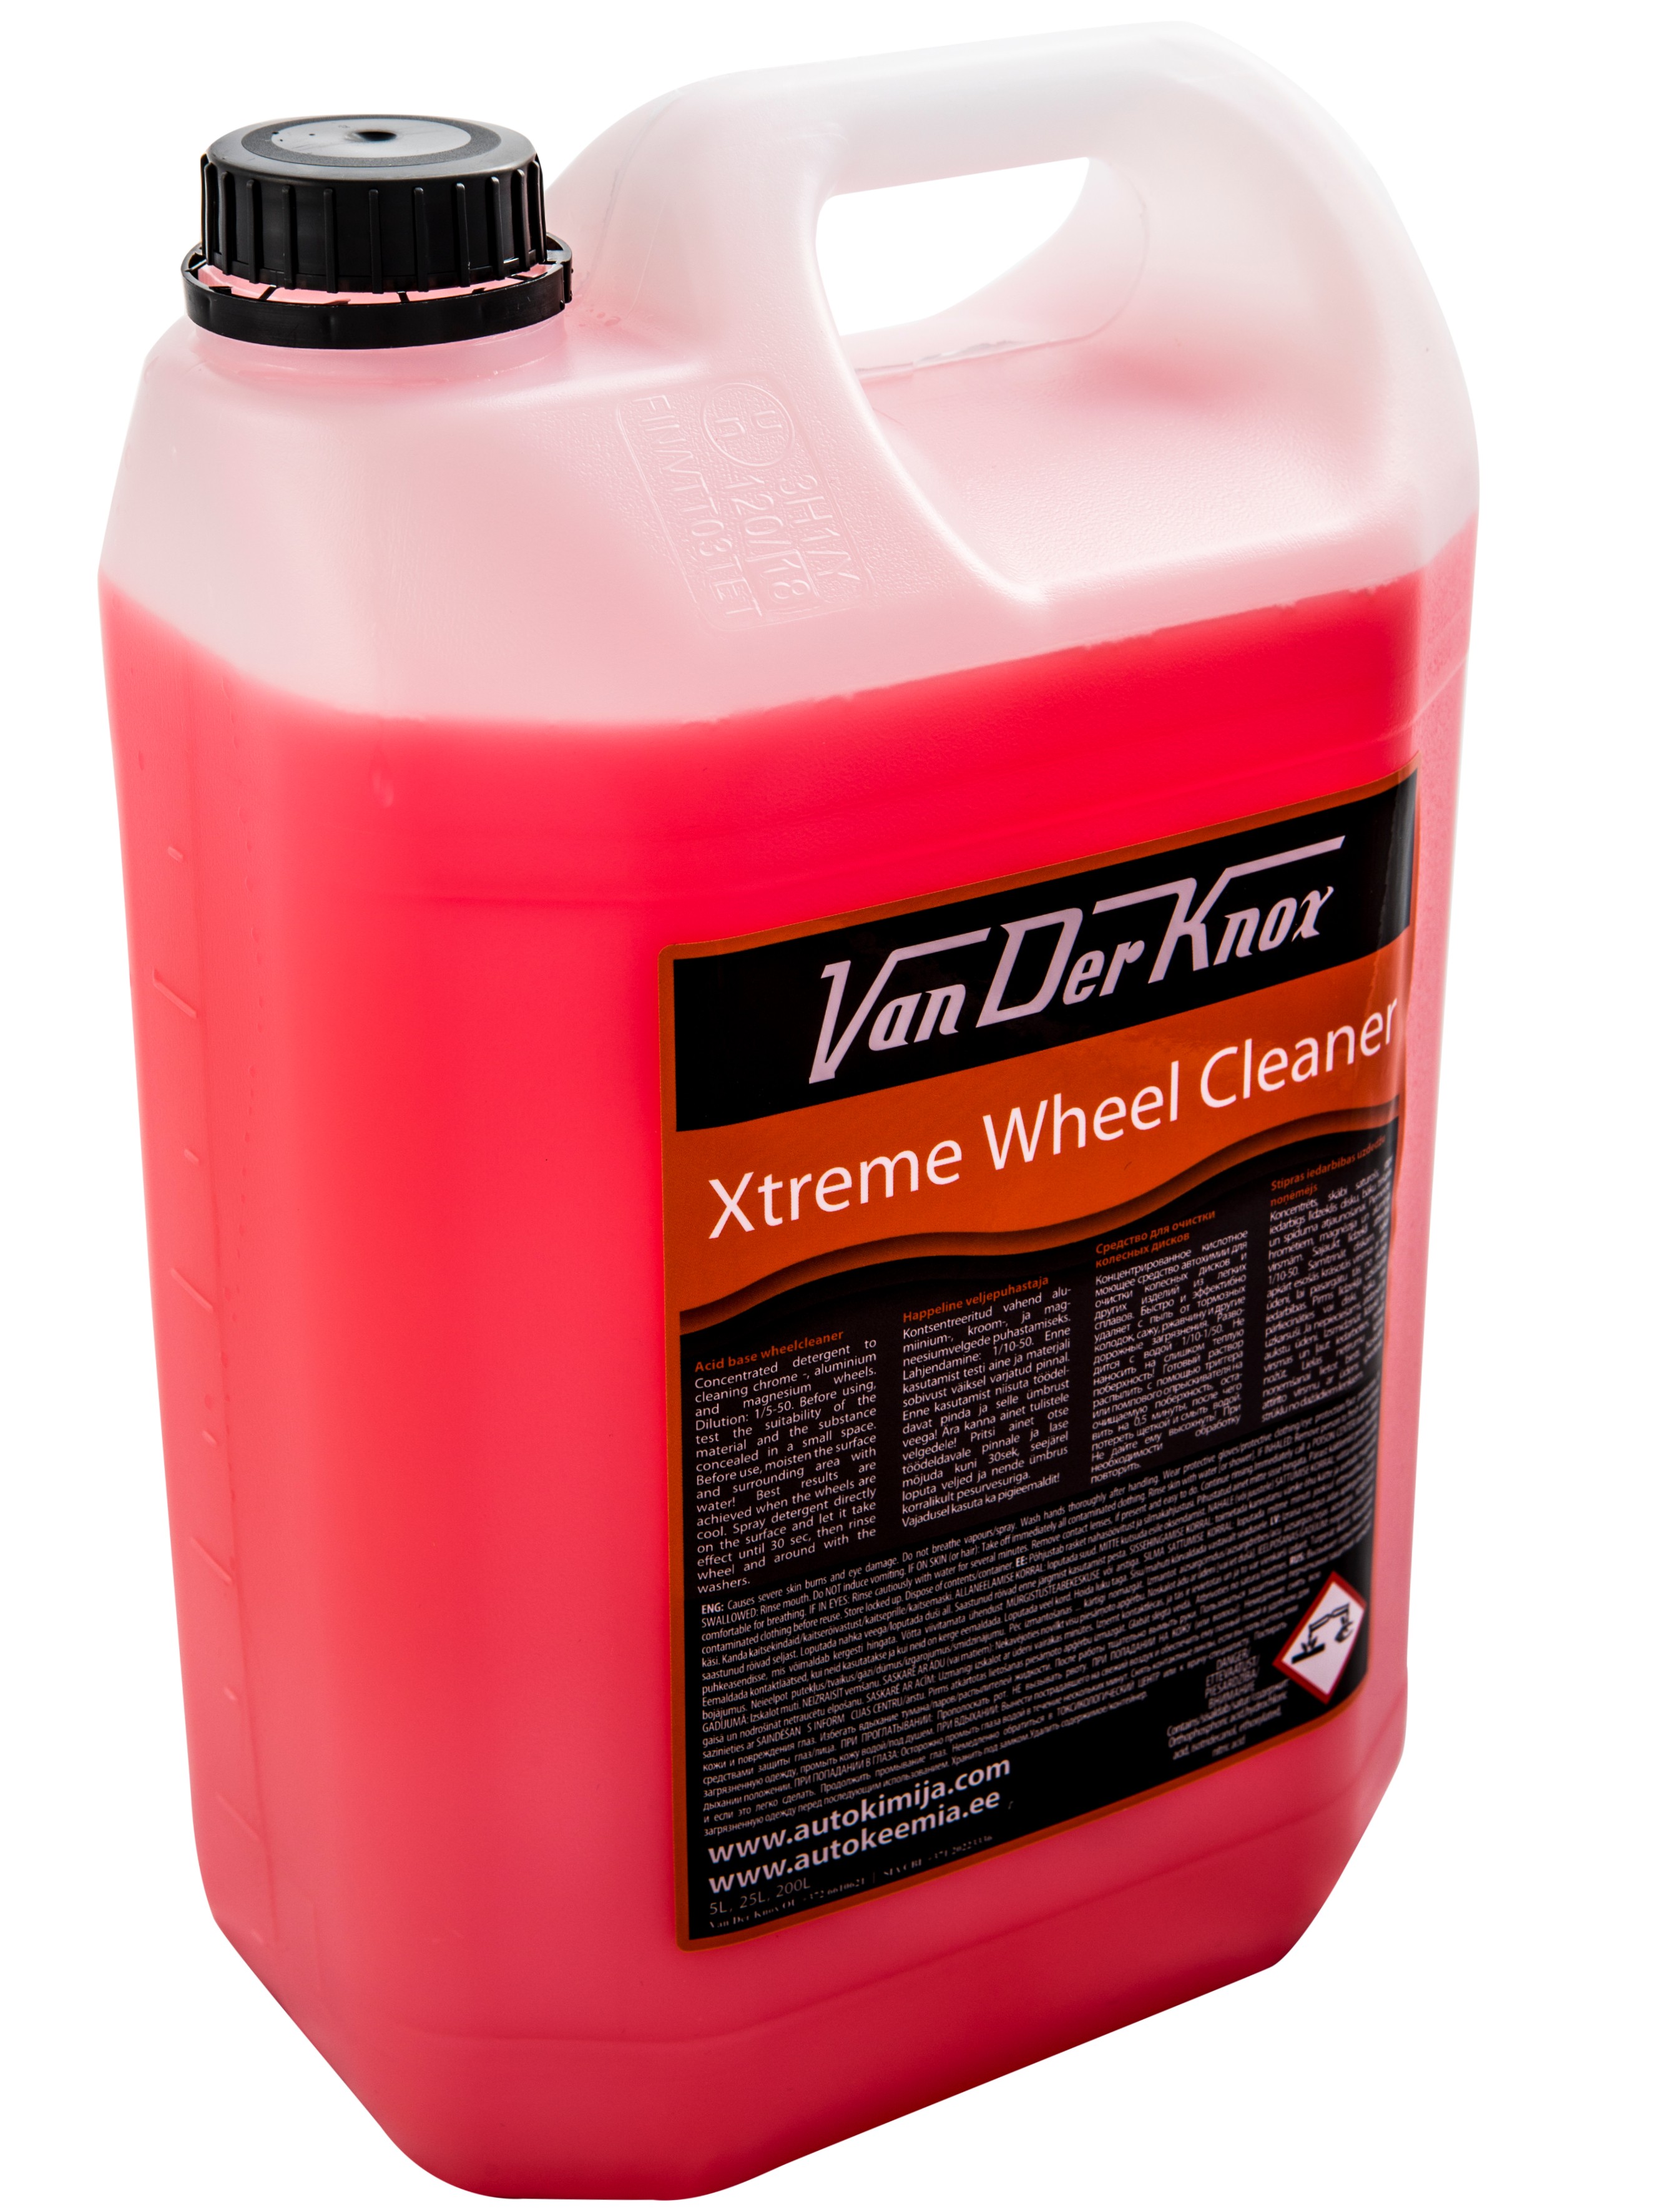 XTREME WHEEL CLEANER - кислота для ободов колес - мытье ободов колес - очиститель ободов - средство для чистки ободов